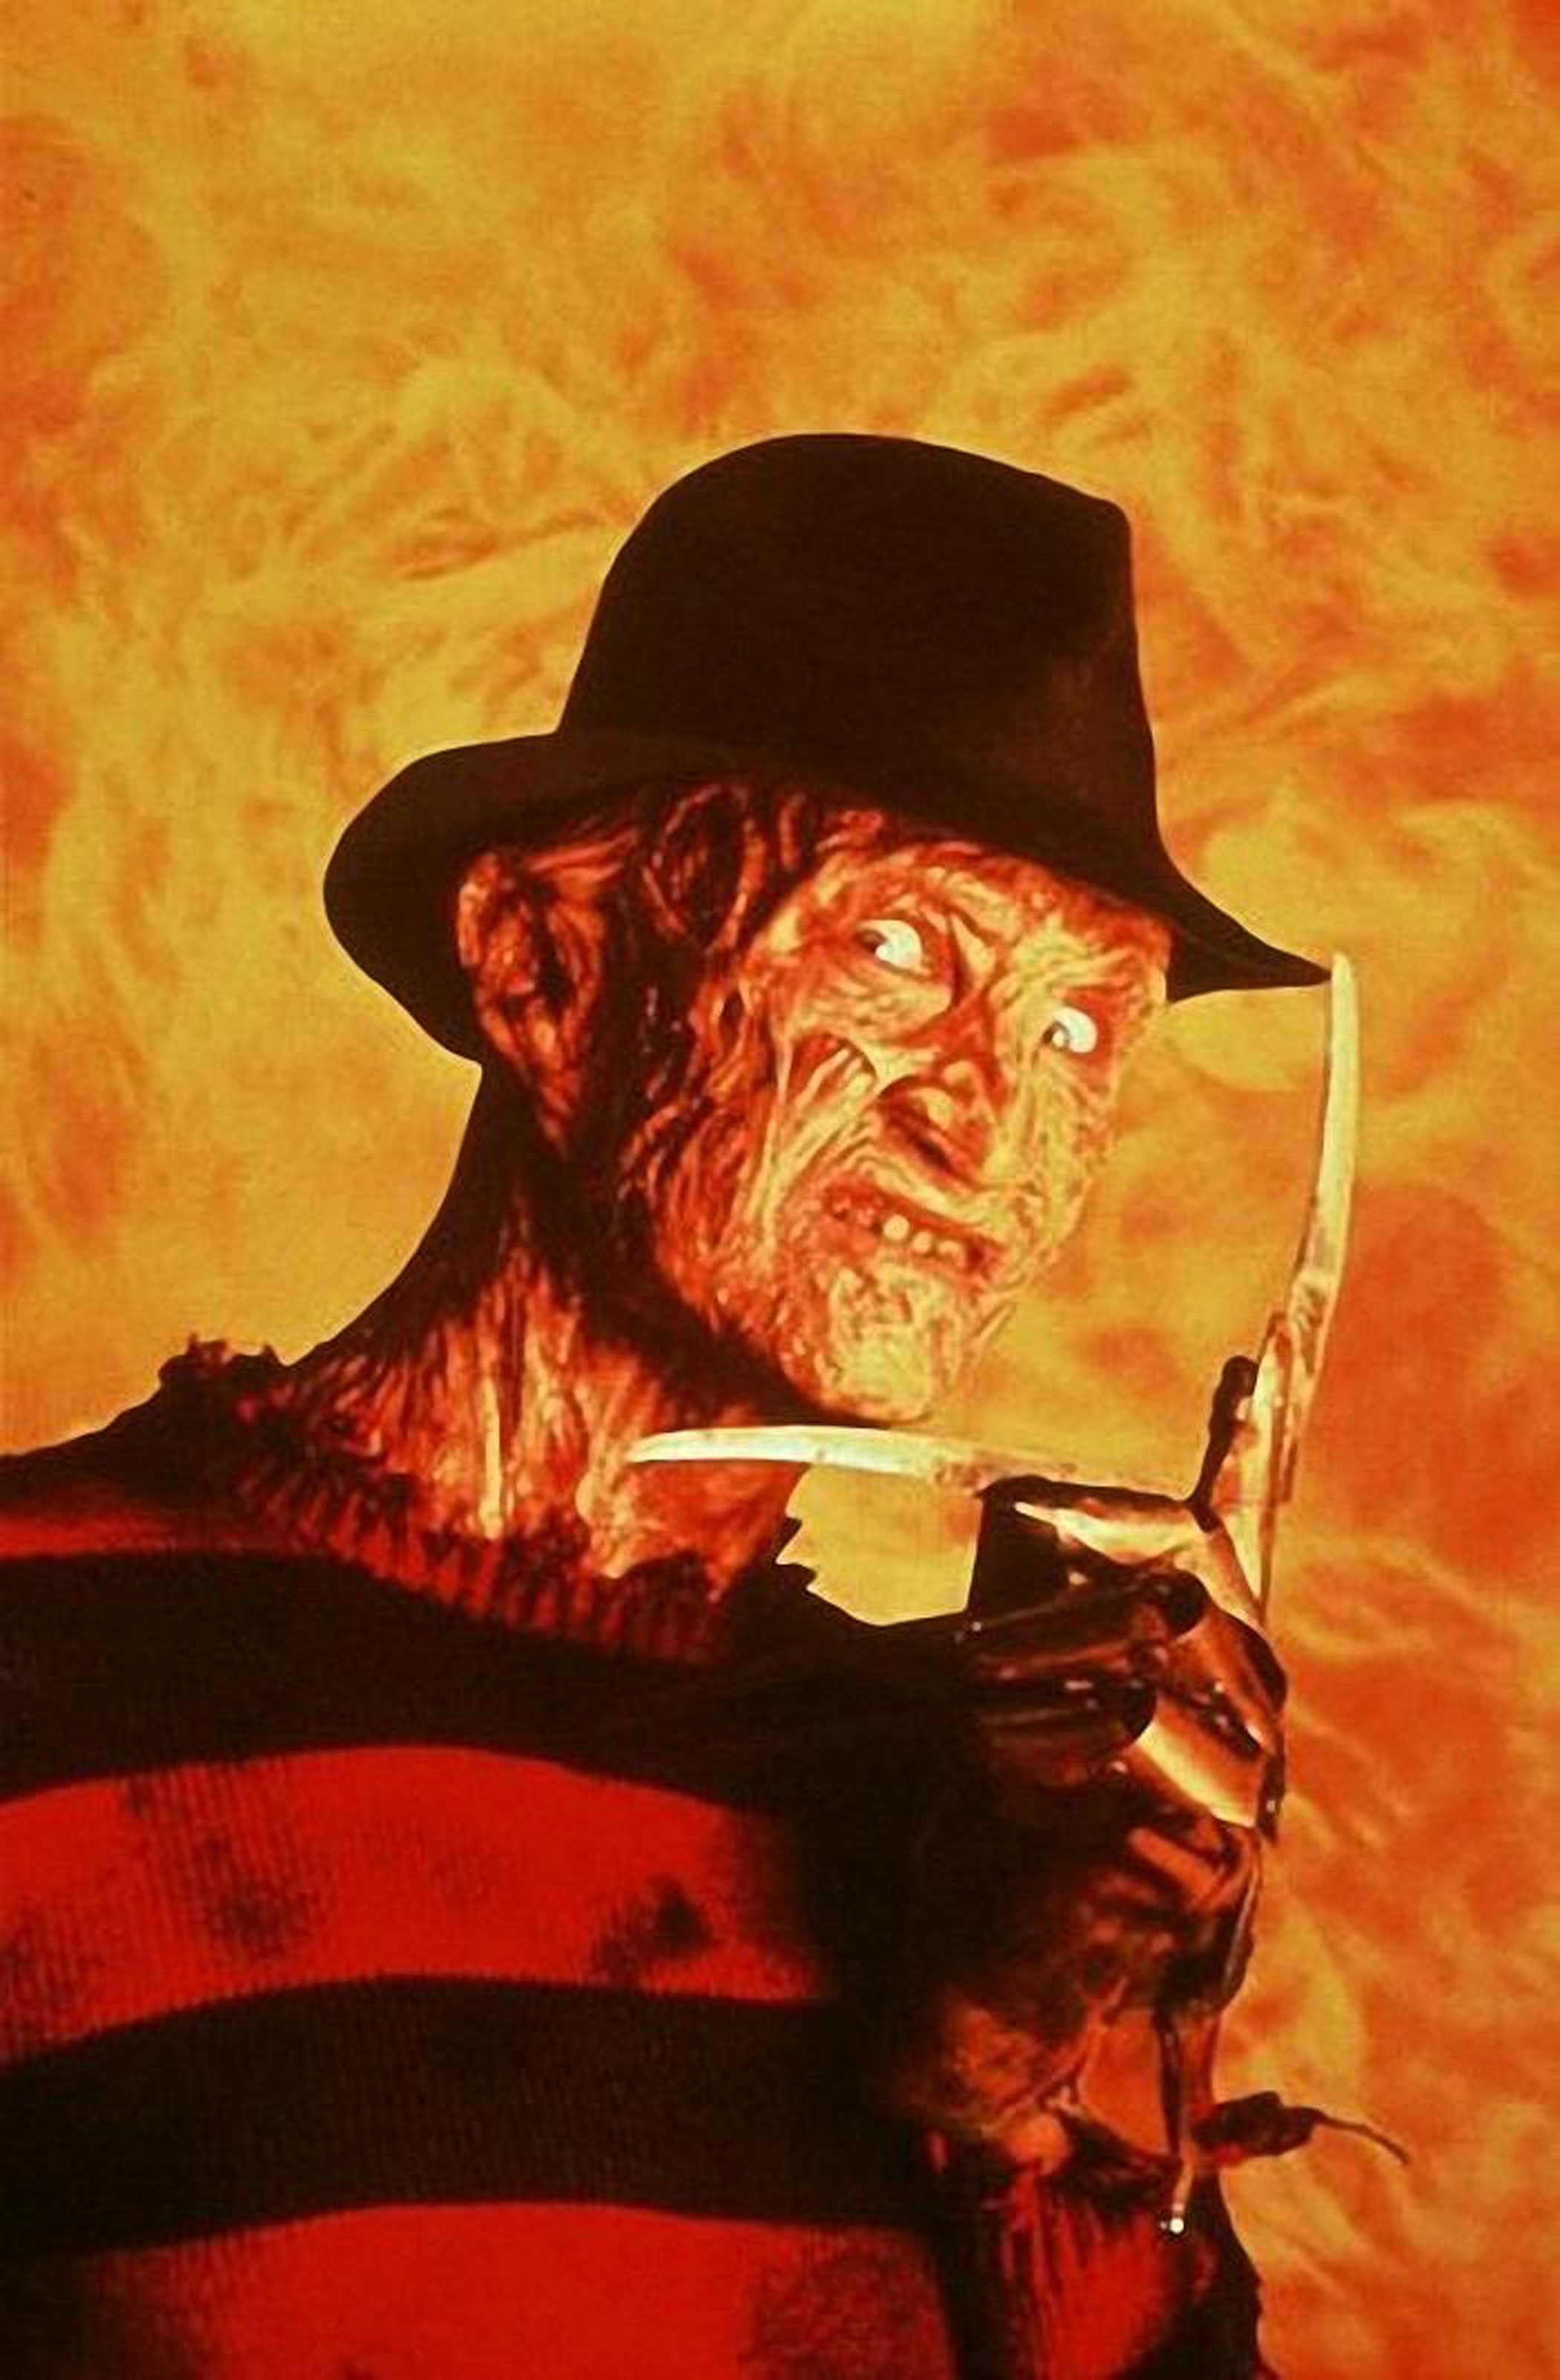 Freddy Krueger from A Nightmare on Elm Street, 1984.